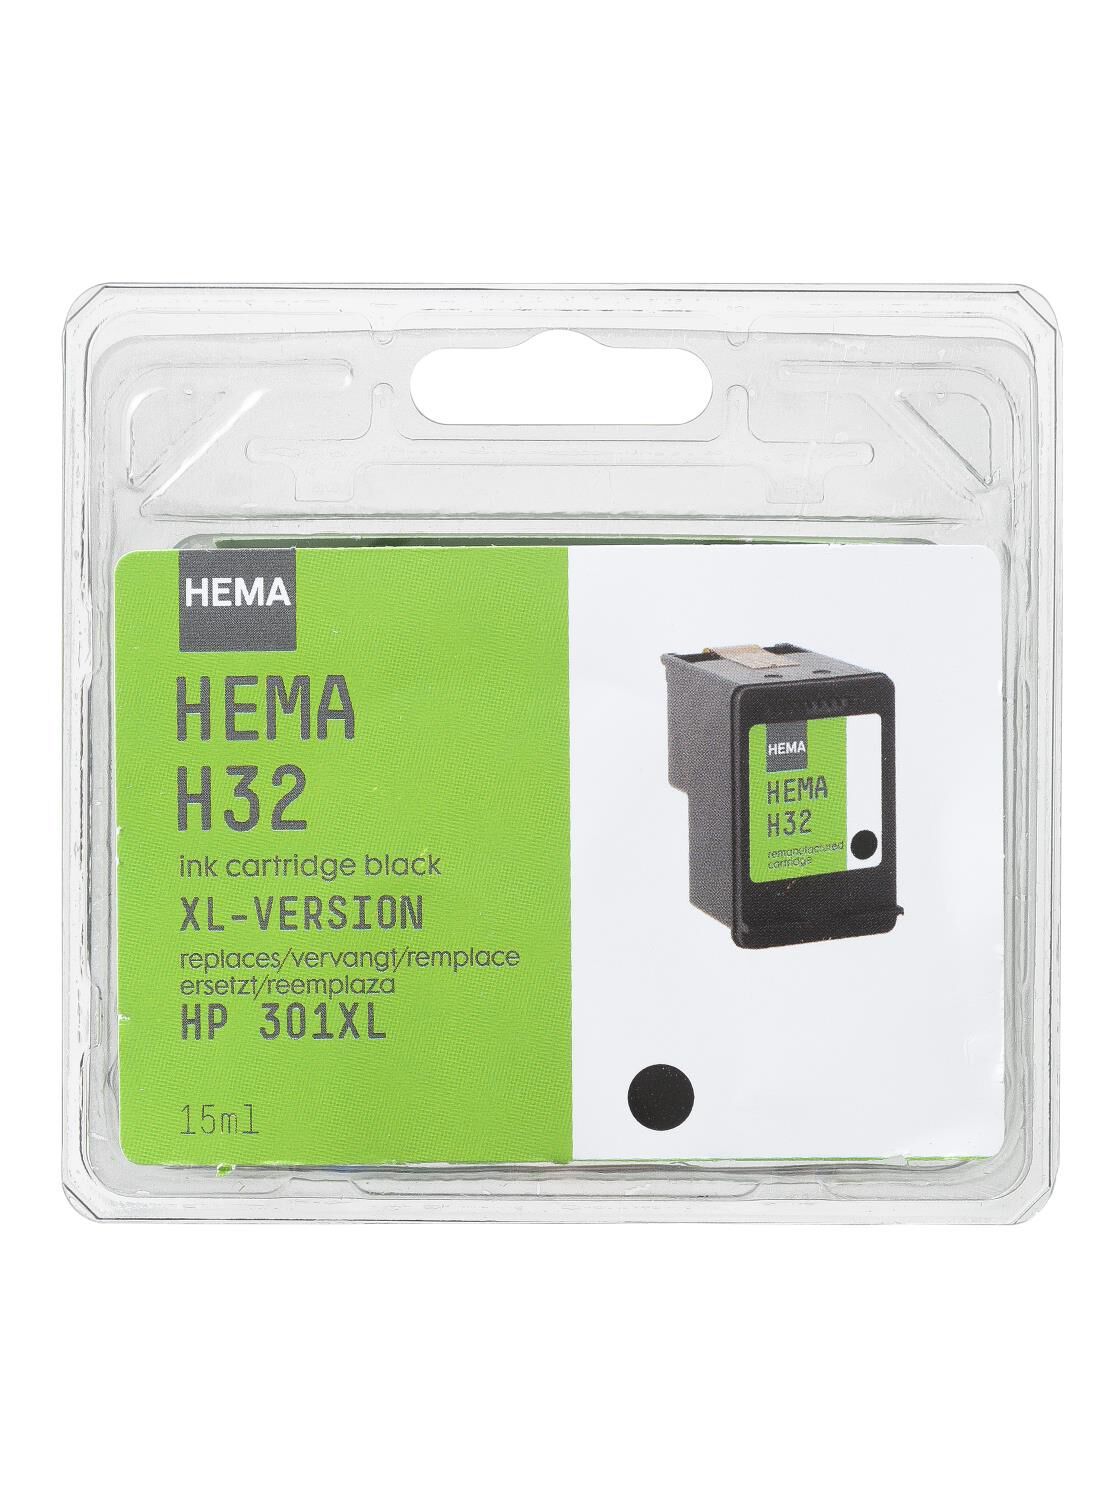 HEMA cartridge H32 voor de HP301 XL zwart - HEMA